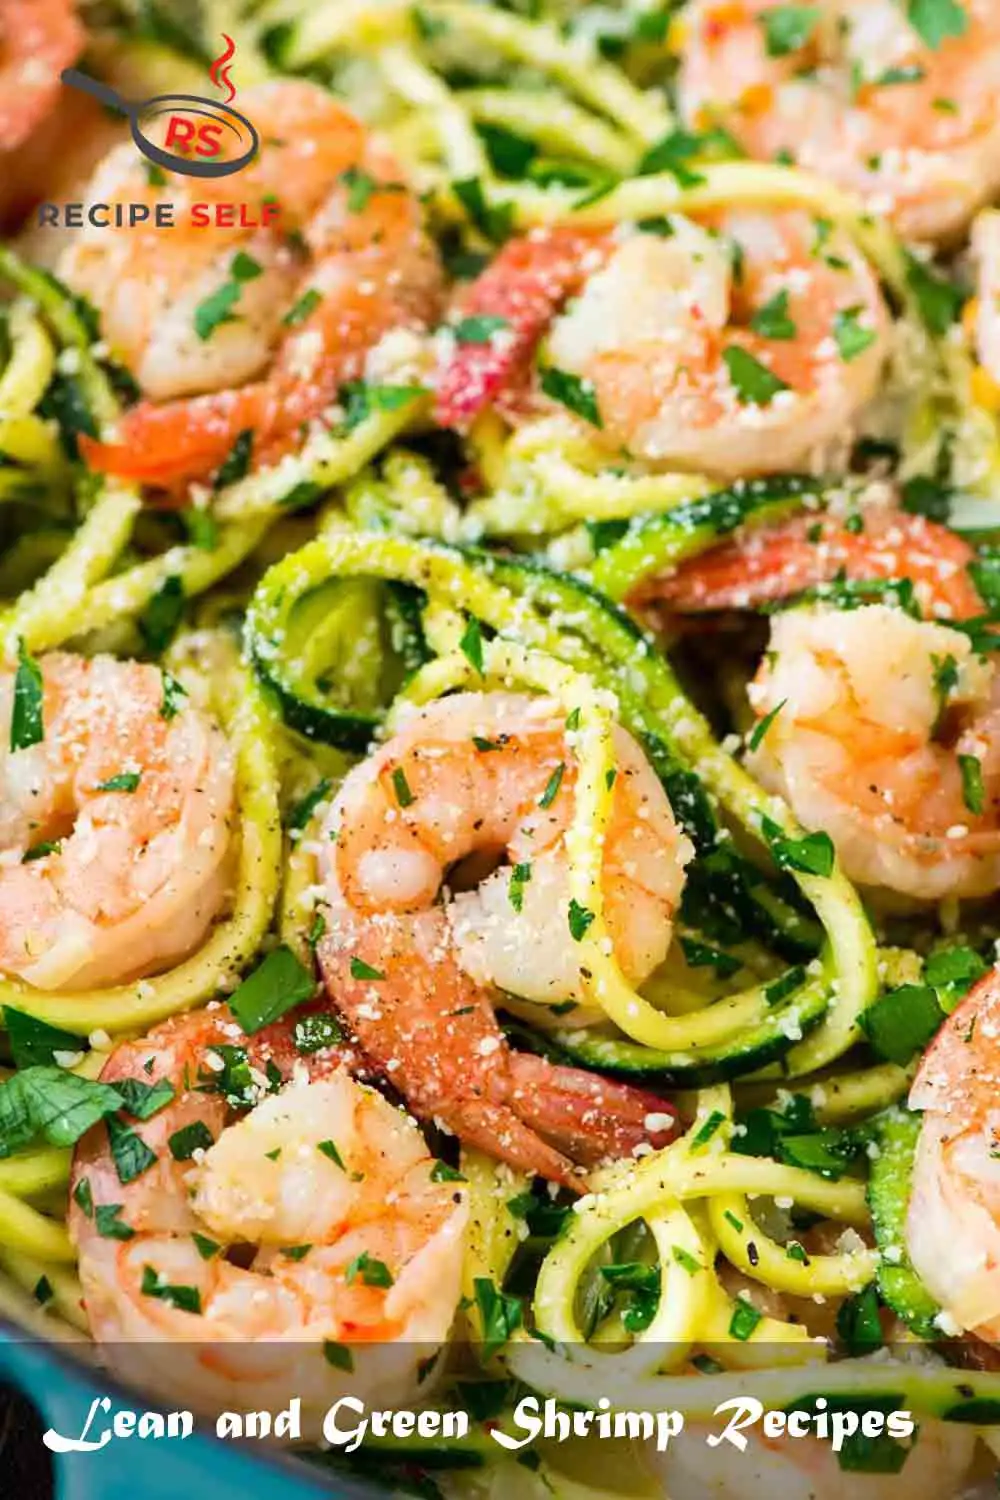 Lean and Green Shrimp Recipes